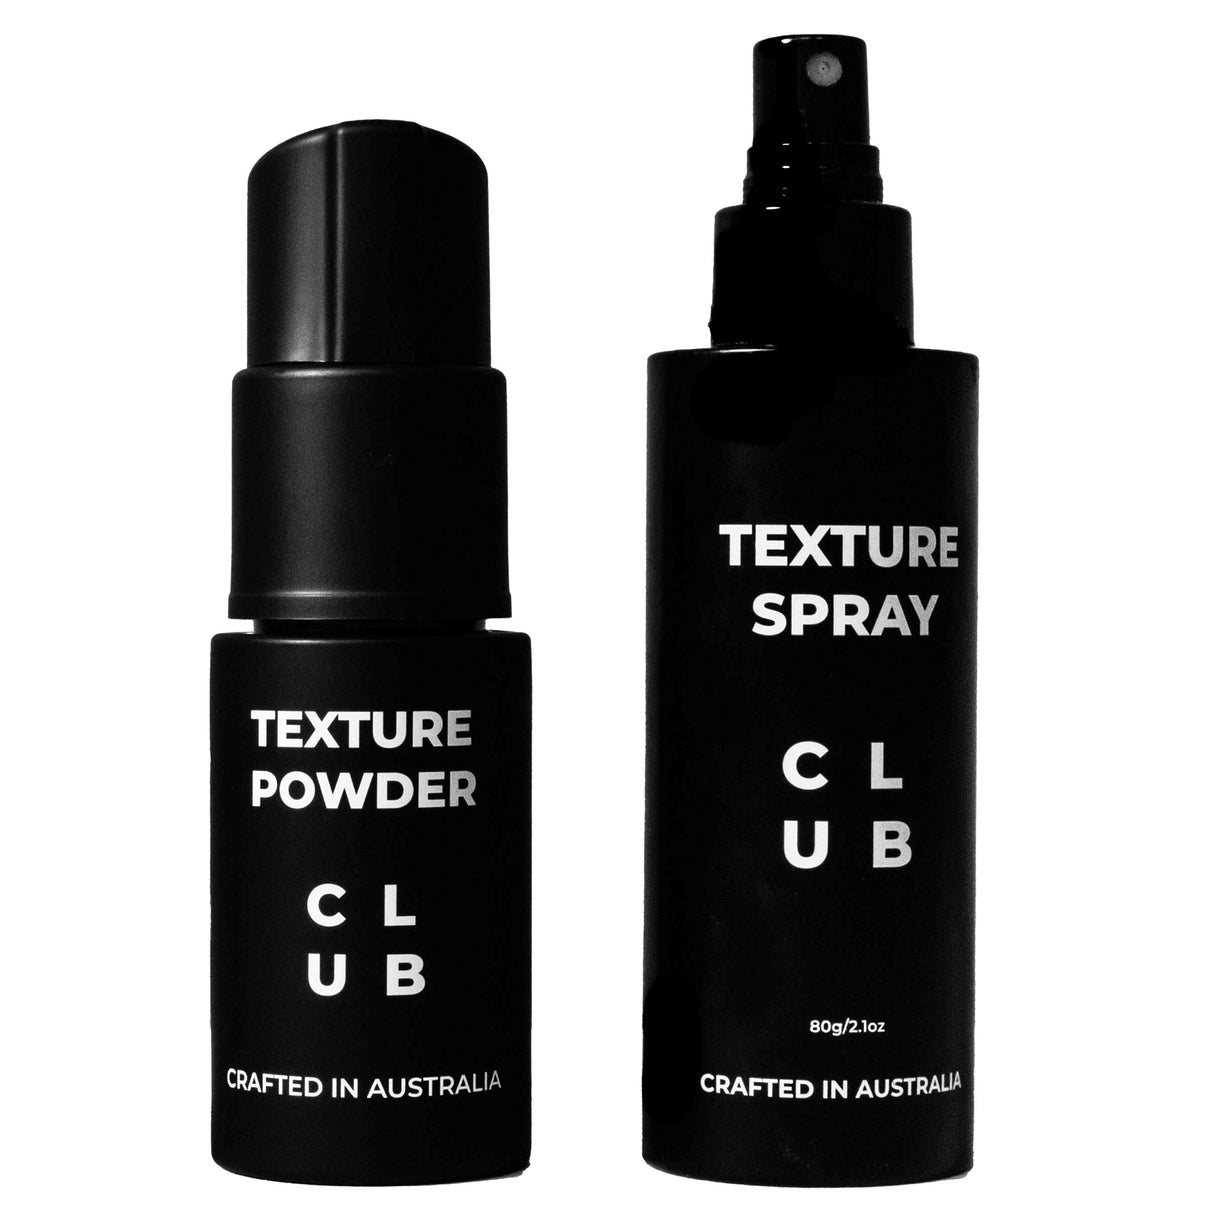 Dark Texture Powder + Texture Spray Duo